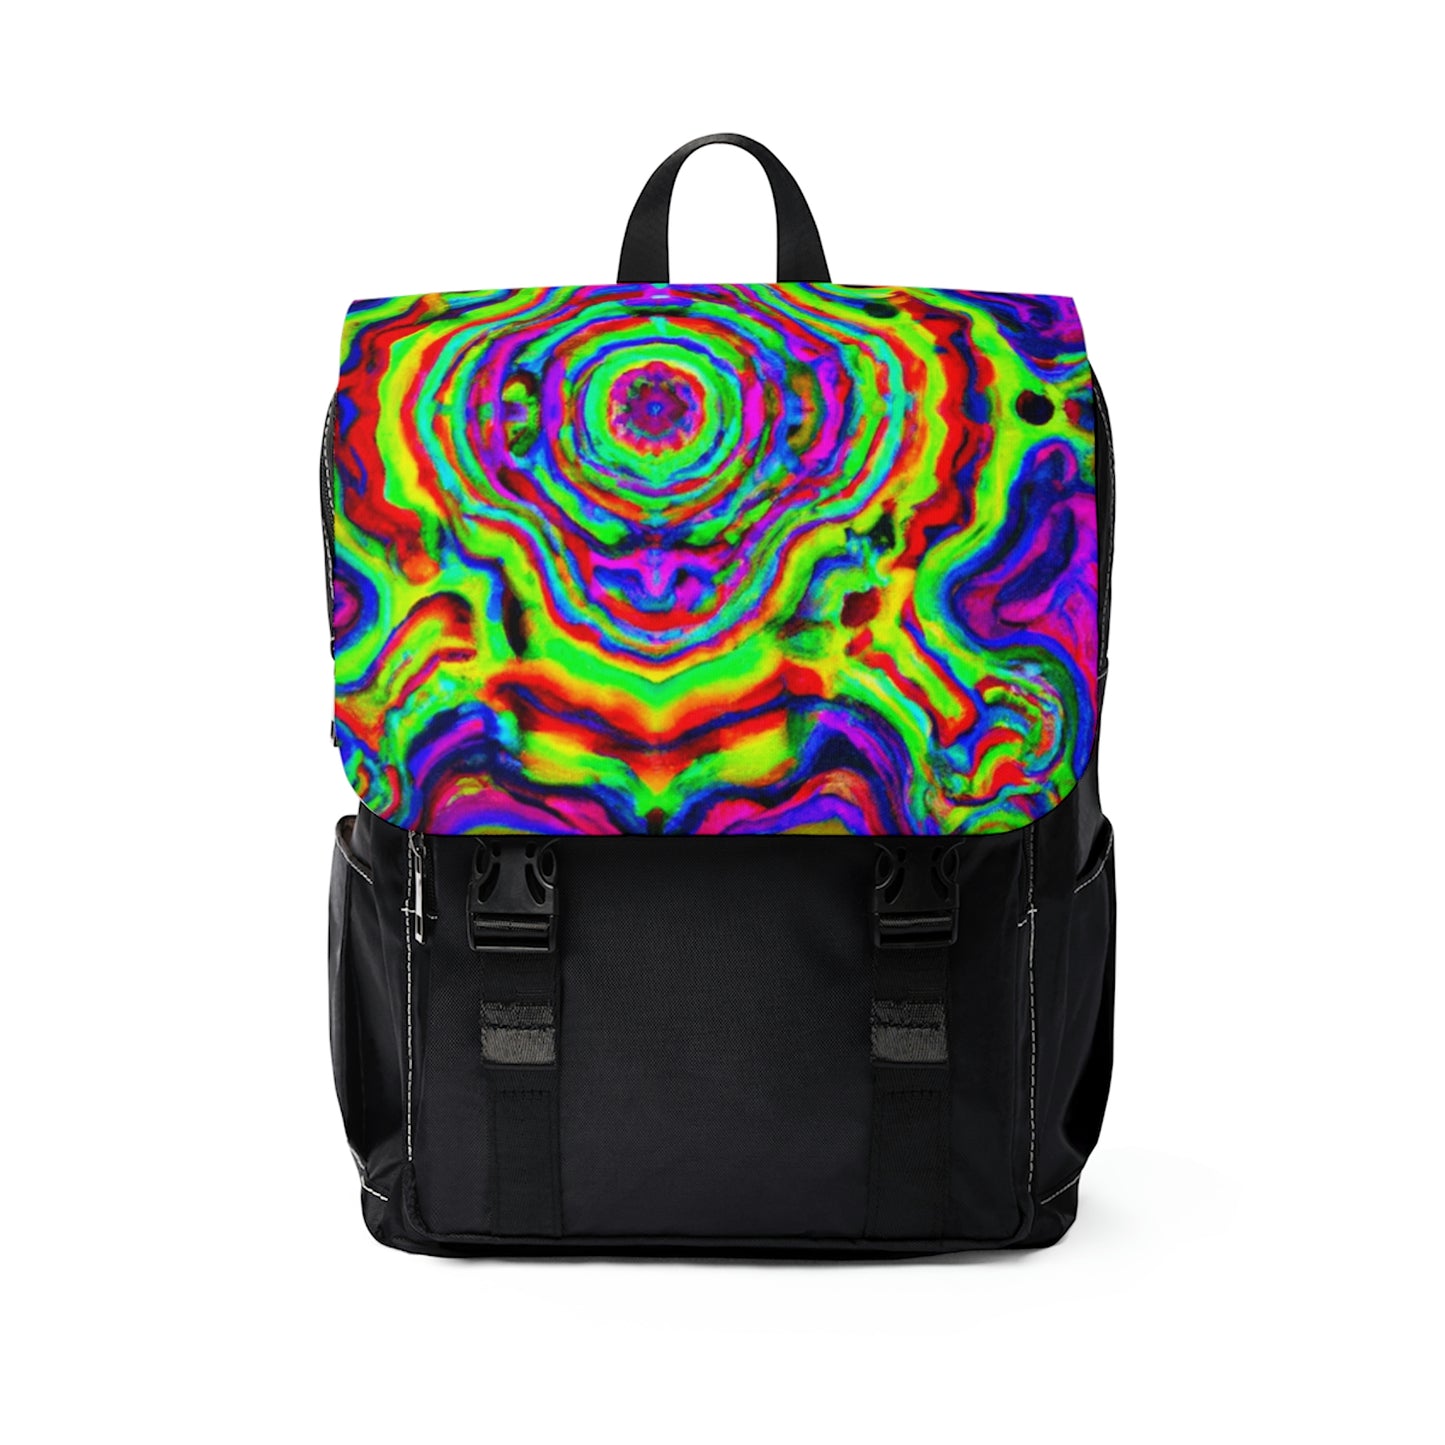 Edelstan - Psychedelic Shoulder Travel Backpack Bag